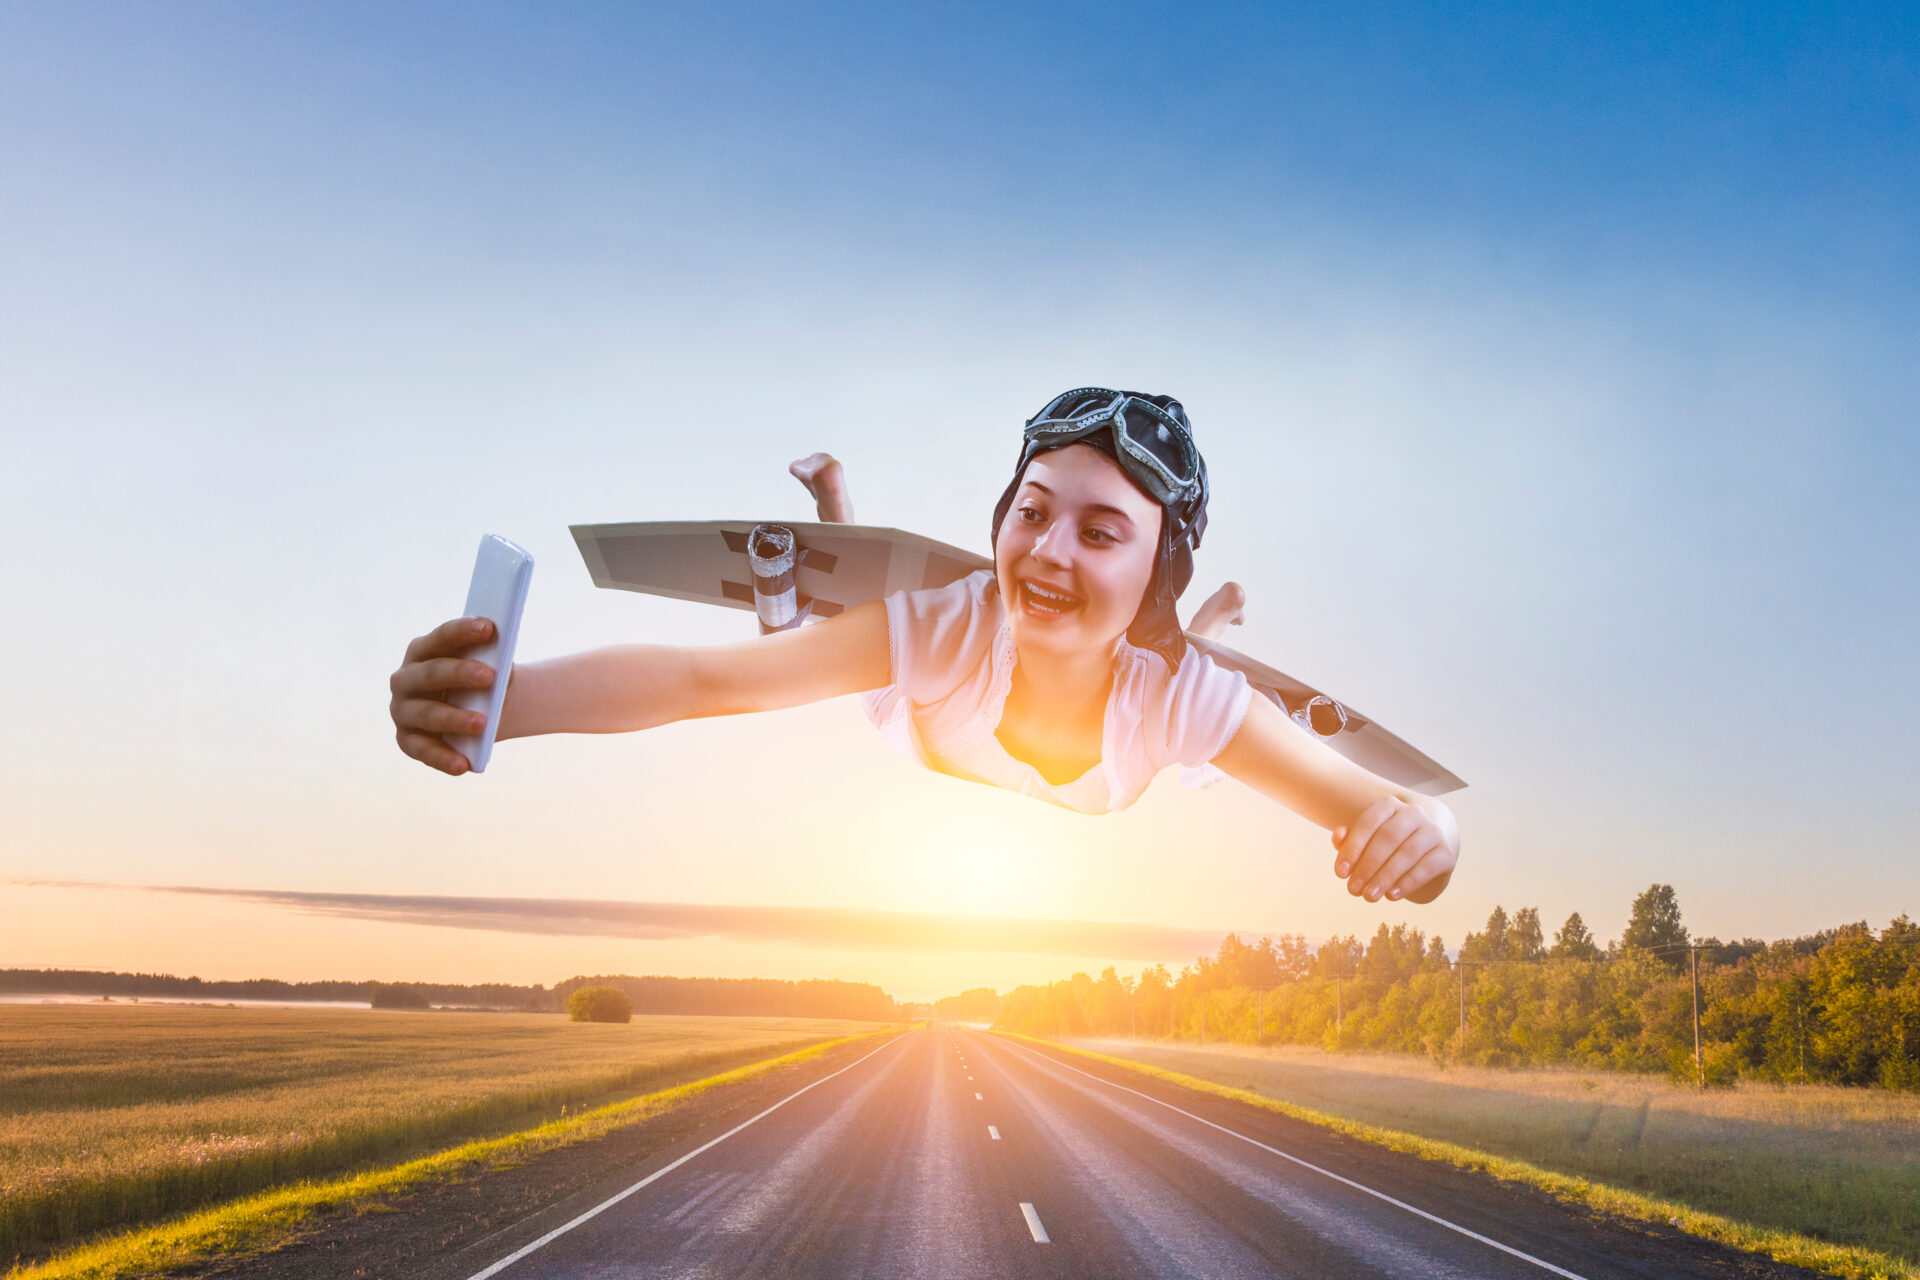 Product Experience Management Title Image: Ein Mädchen fliegt durch die Luft mit selbstgemachten Papierflügeln und macht ein Selfie